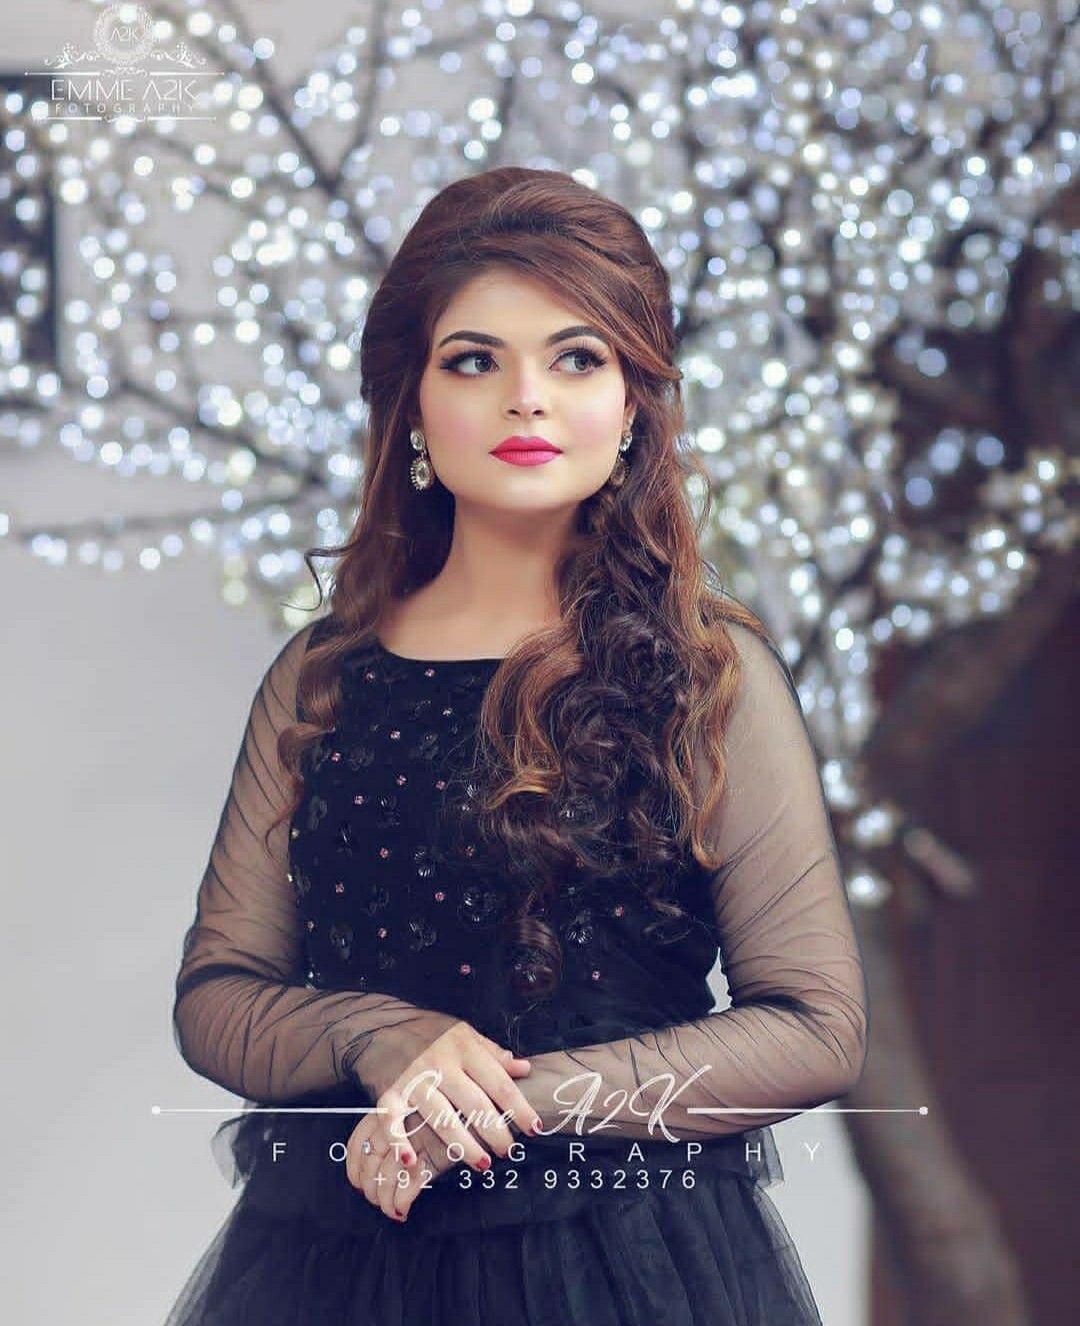 Pakistani pink best engagement makeup look in gown - engagement makeup images - engagement makeup for bride